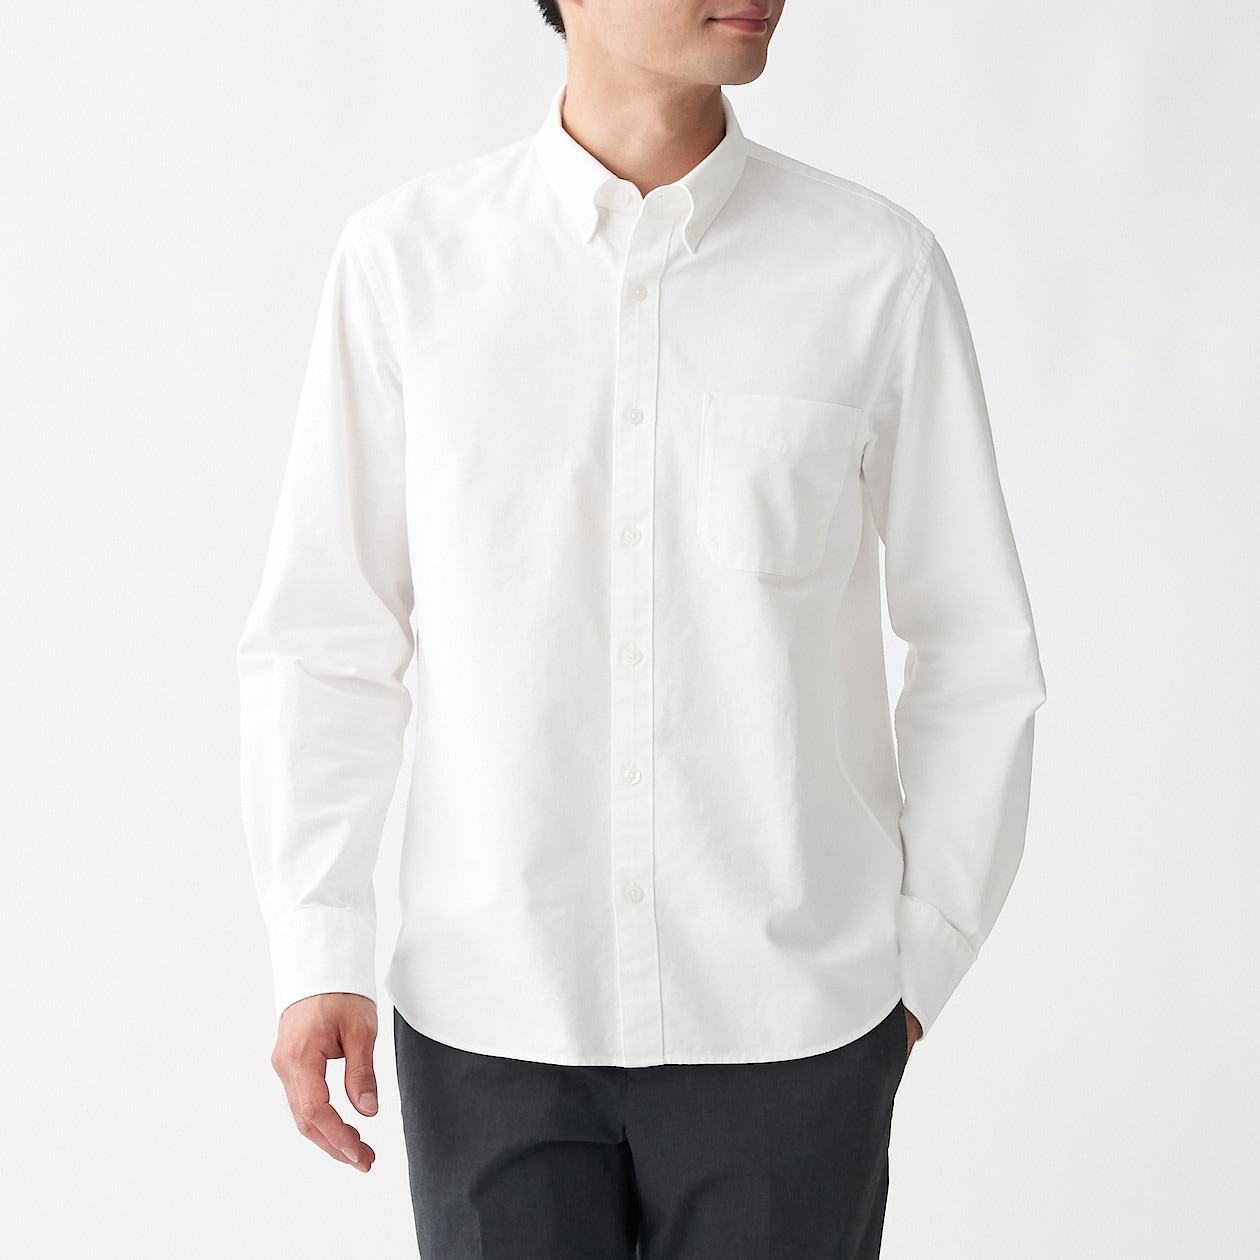 洗いざらしオックスボタンダウンシャツ 紳士ｘｓ 白 シャツ ワイシャツ 長袖 紳士 メンズ 通販 無印良品